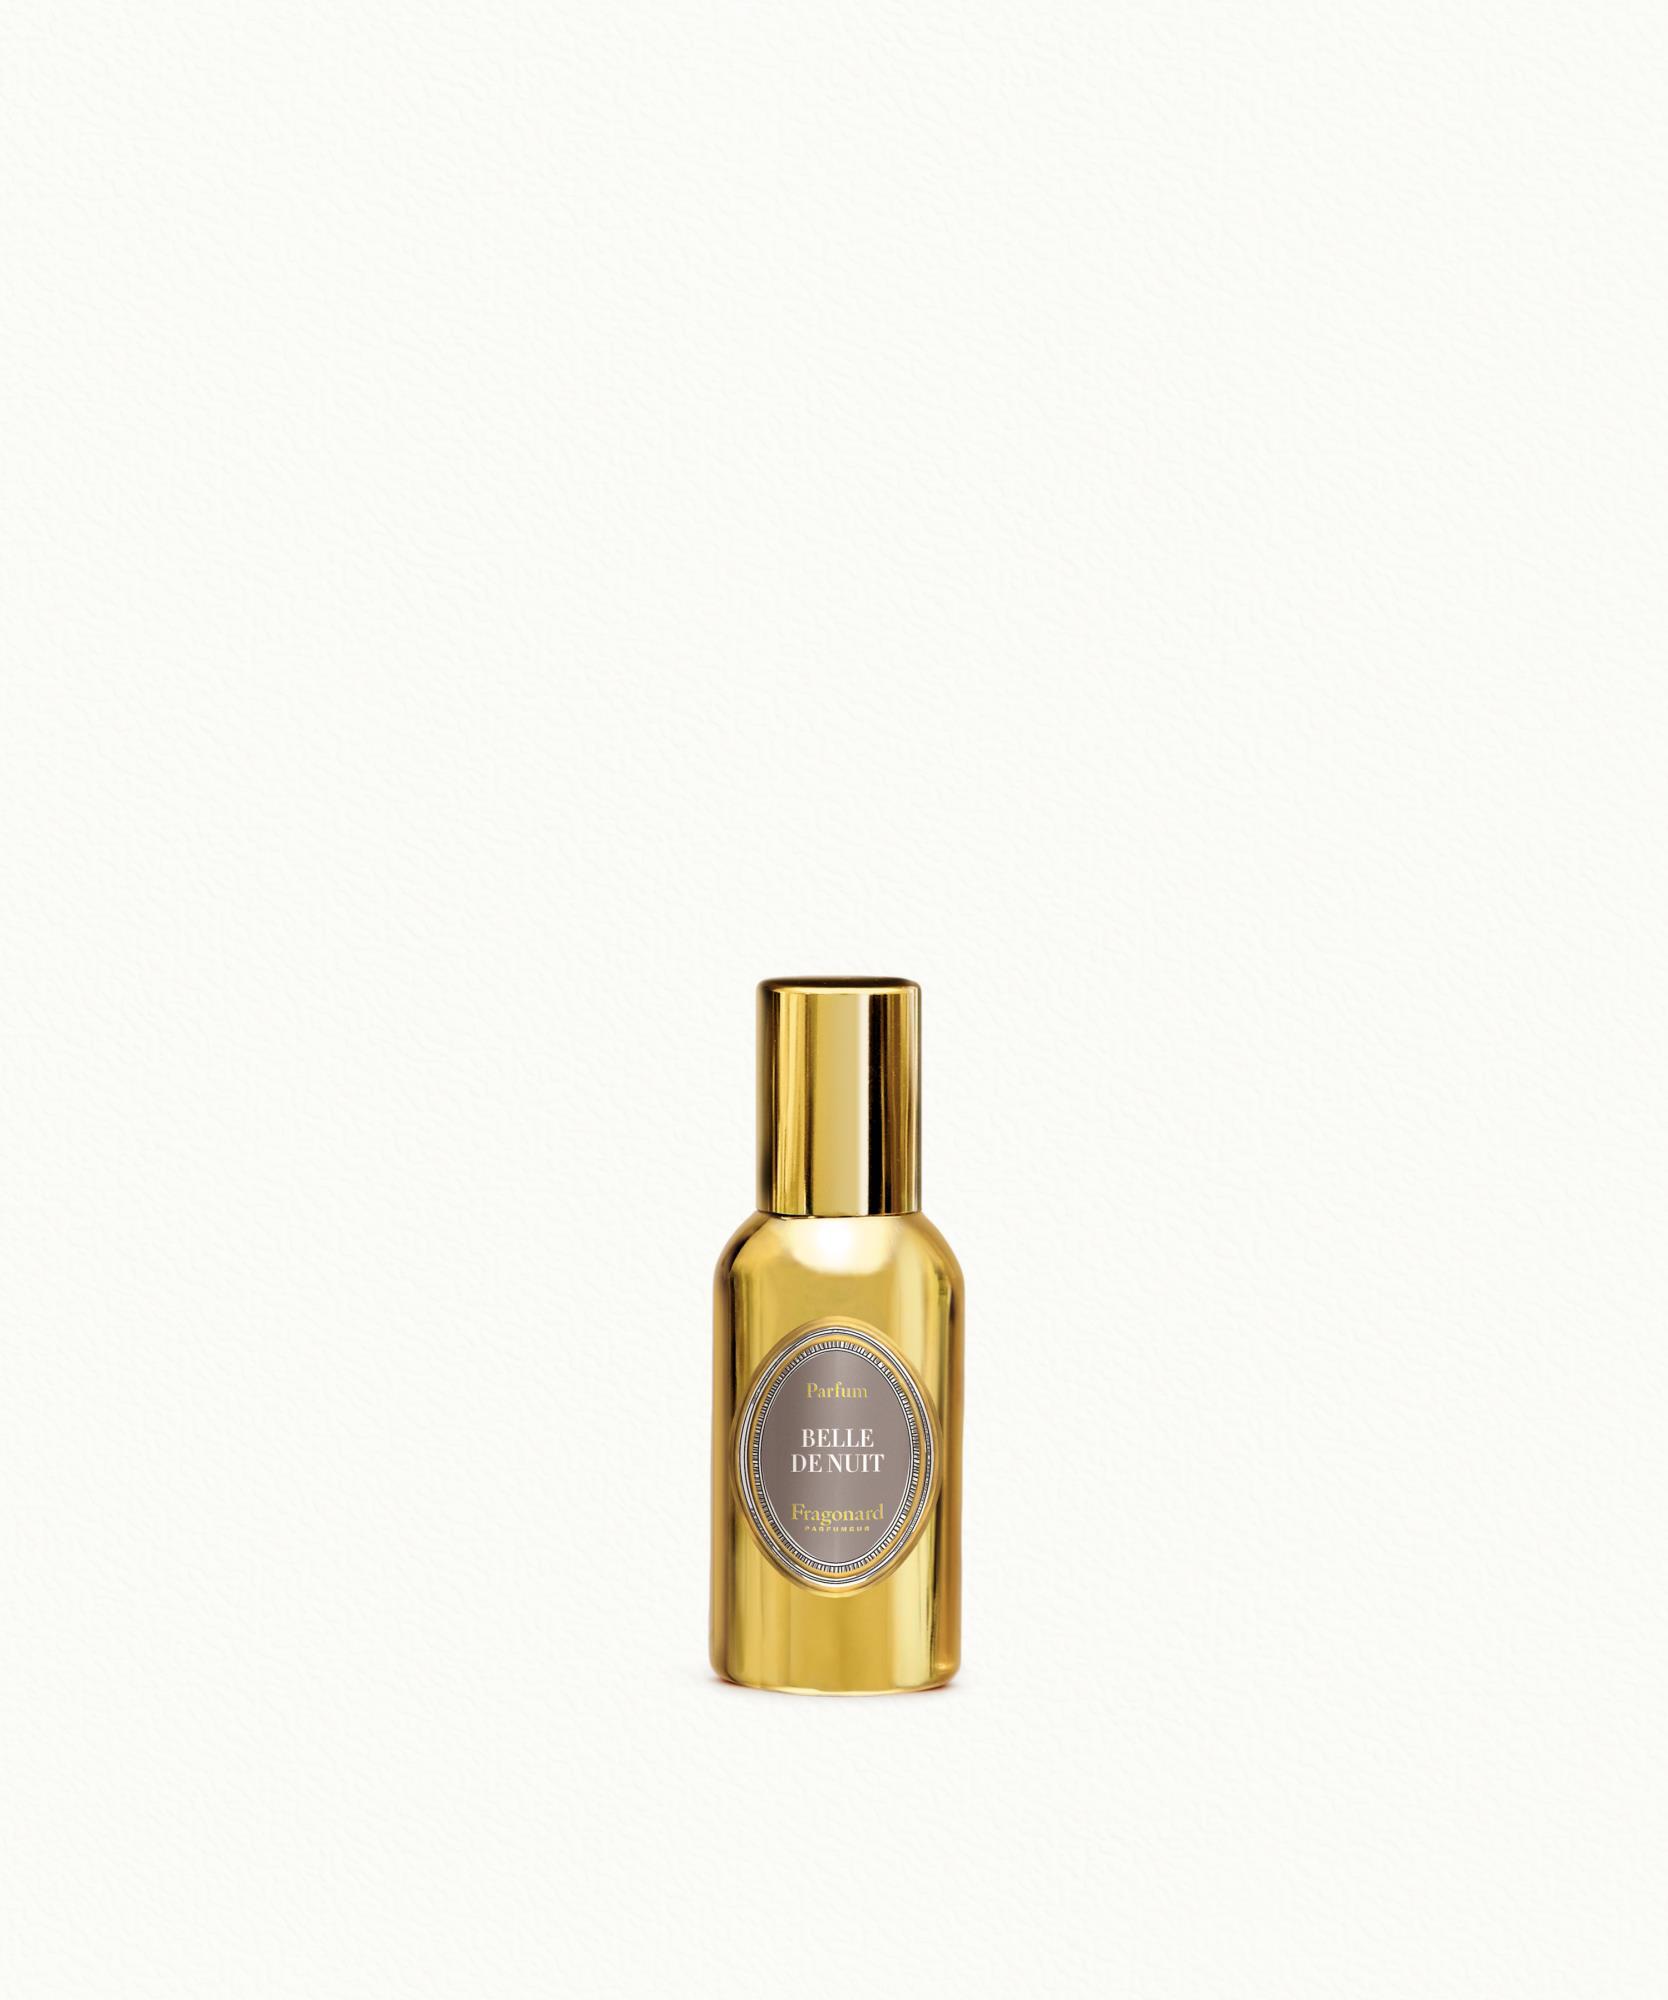 Belle de Nuit Perfume 30ml Fragonard - $ 77.00